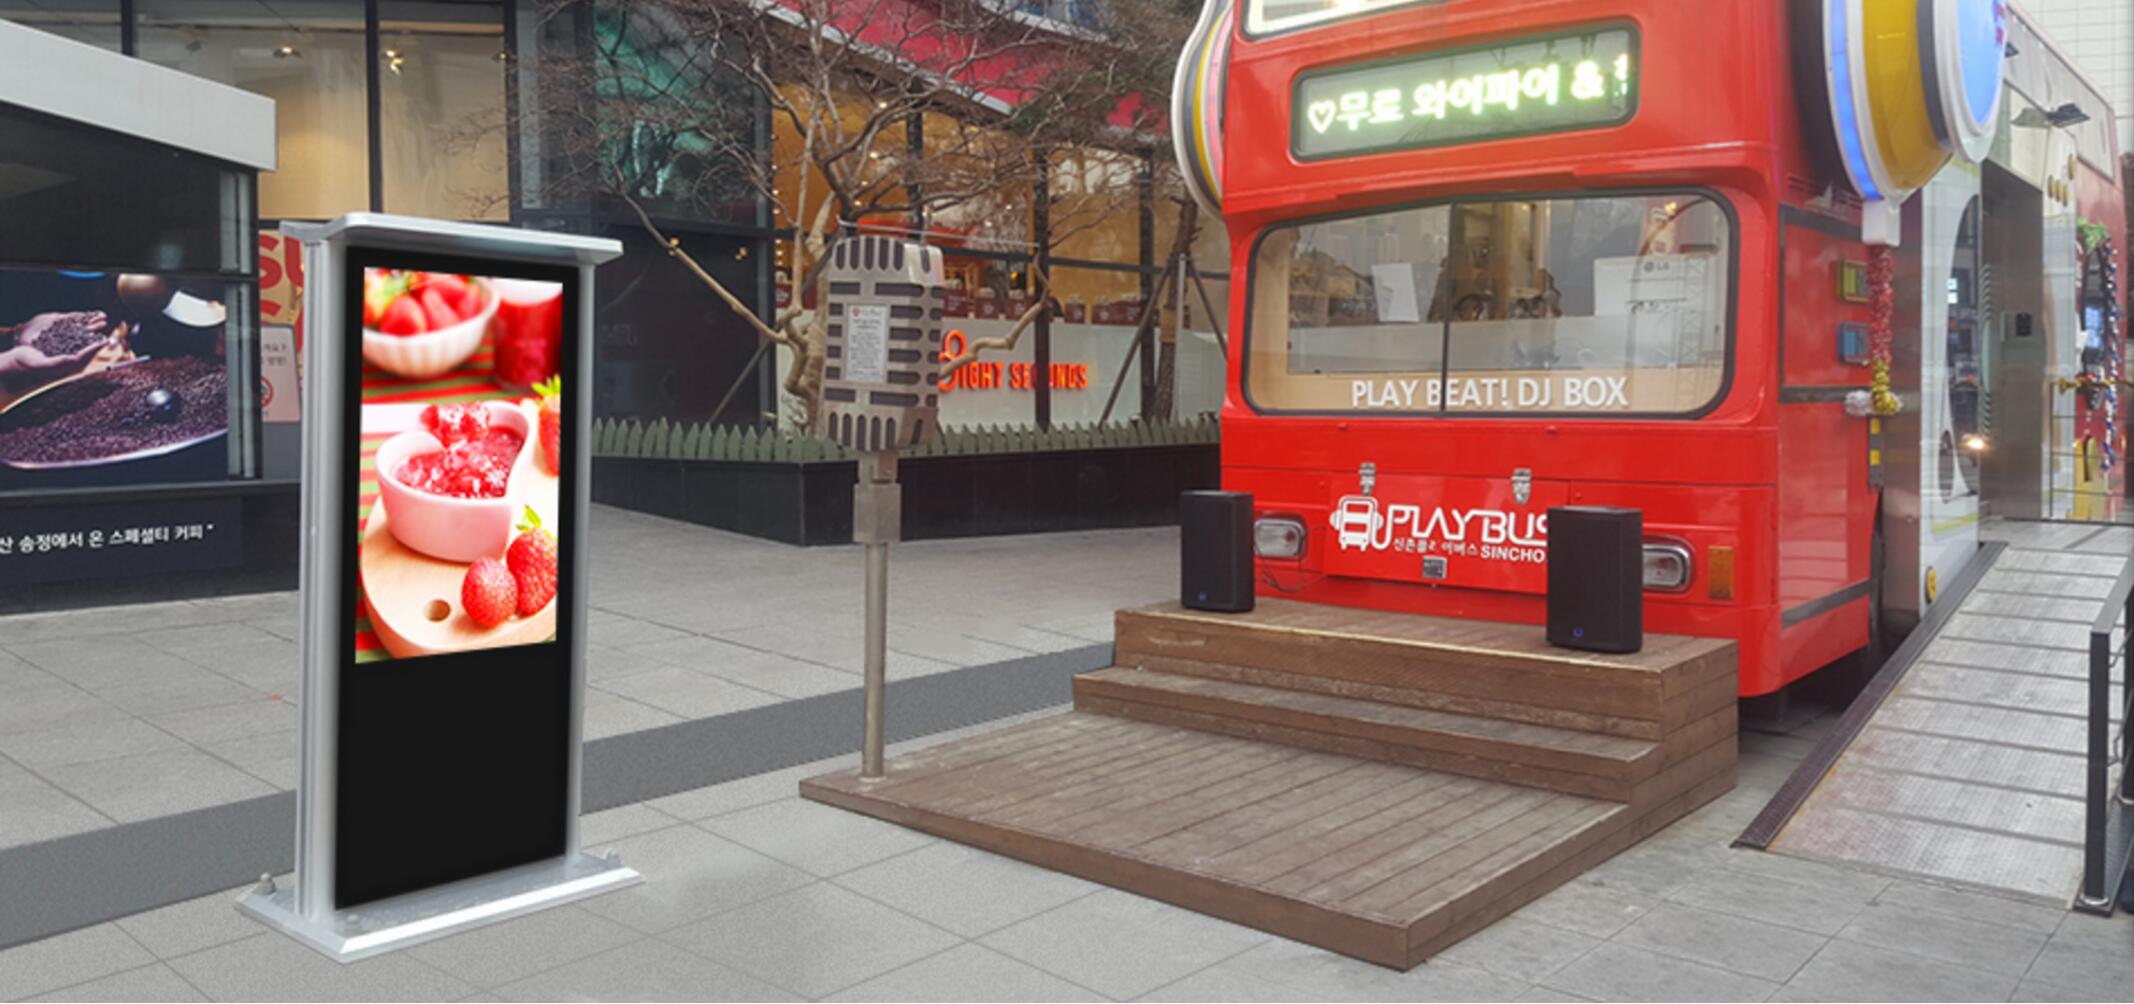 Outdoor Intelligent Community Display in Korea